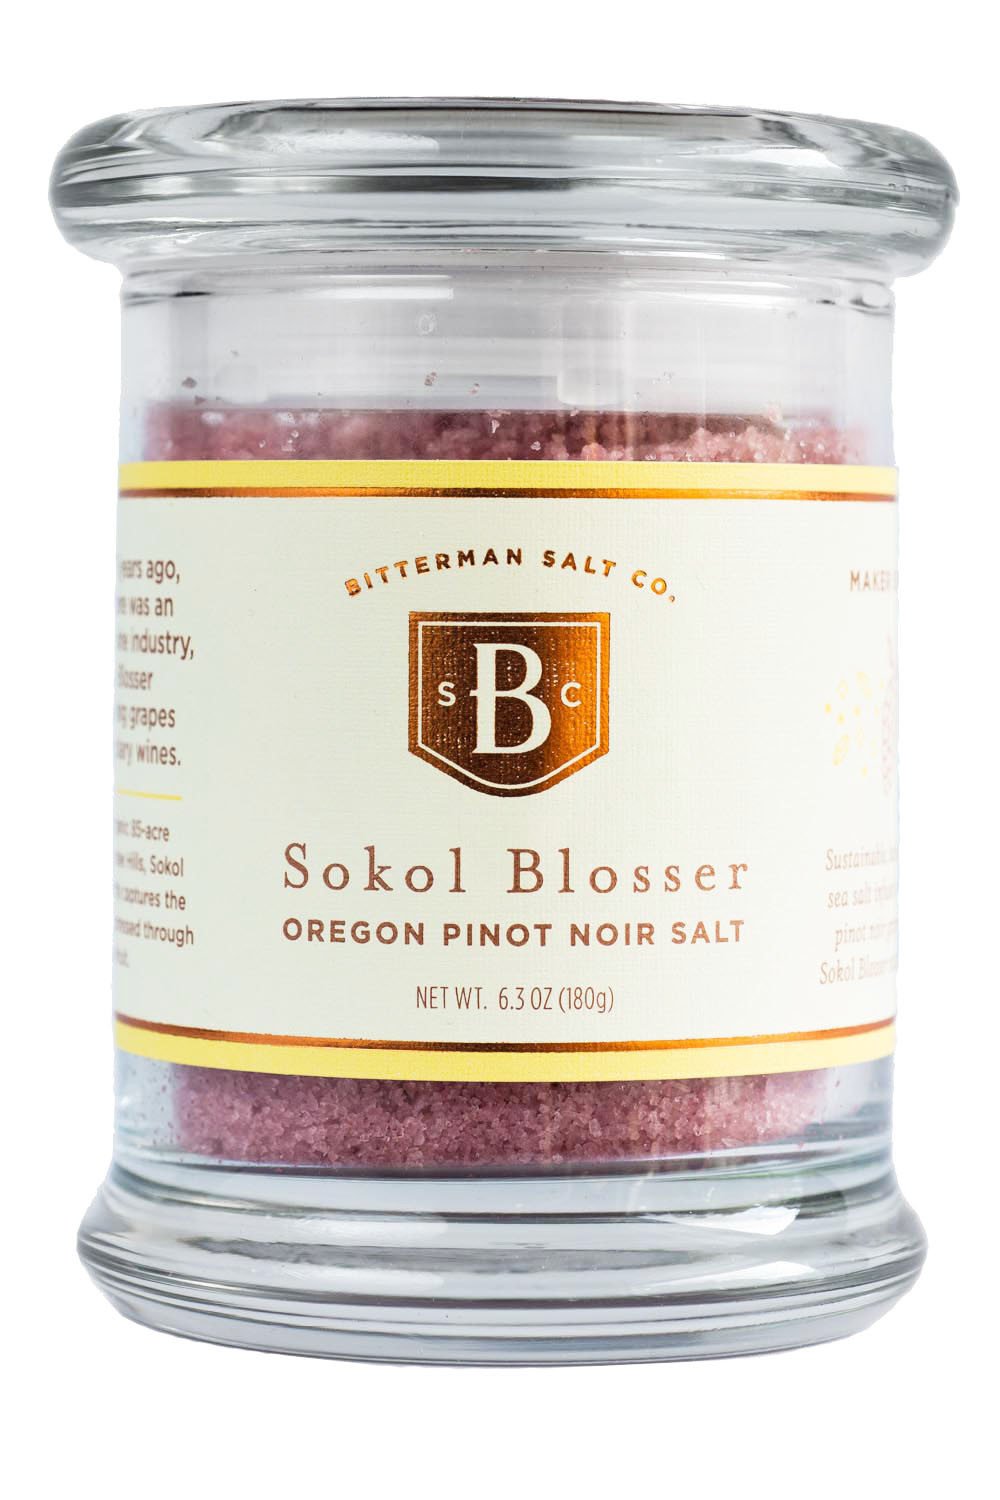 Image of Sokol Blosser Pinot Noir Salt